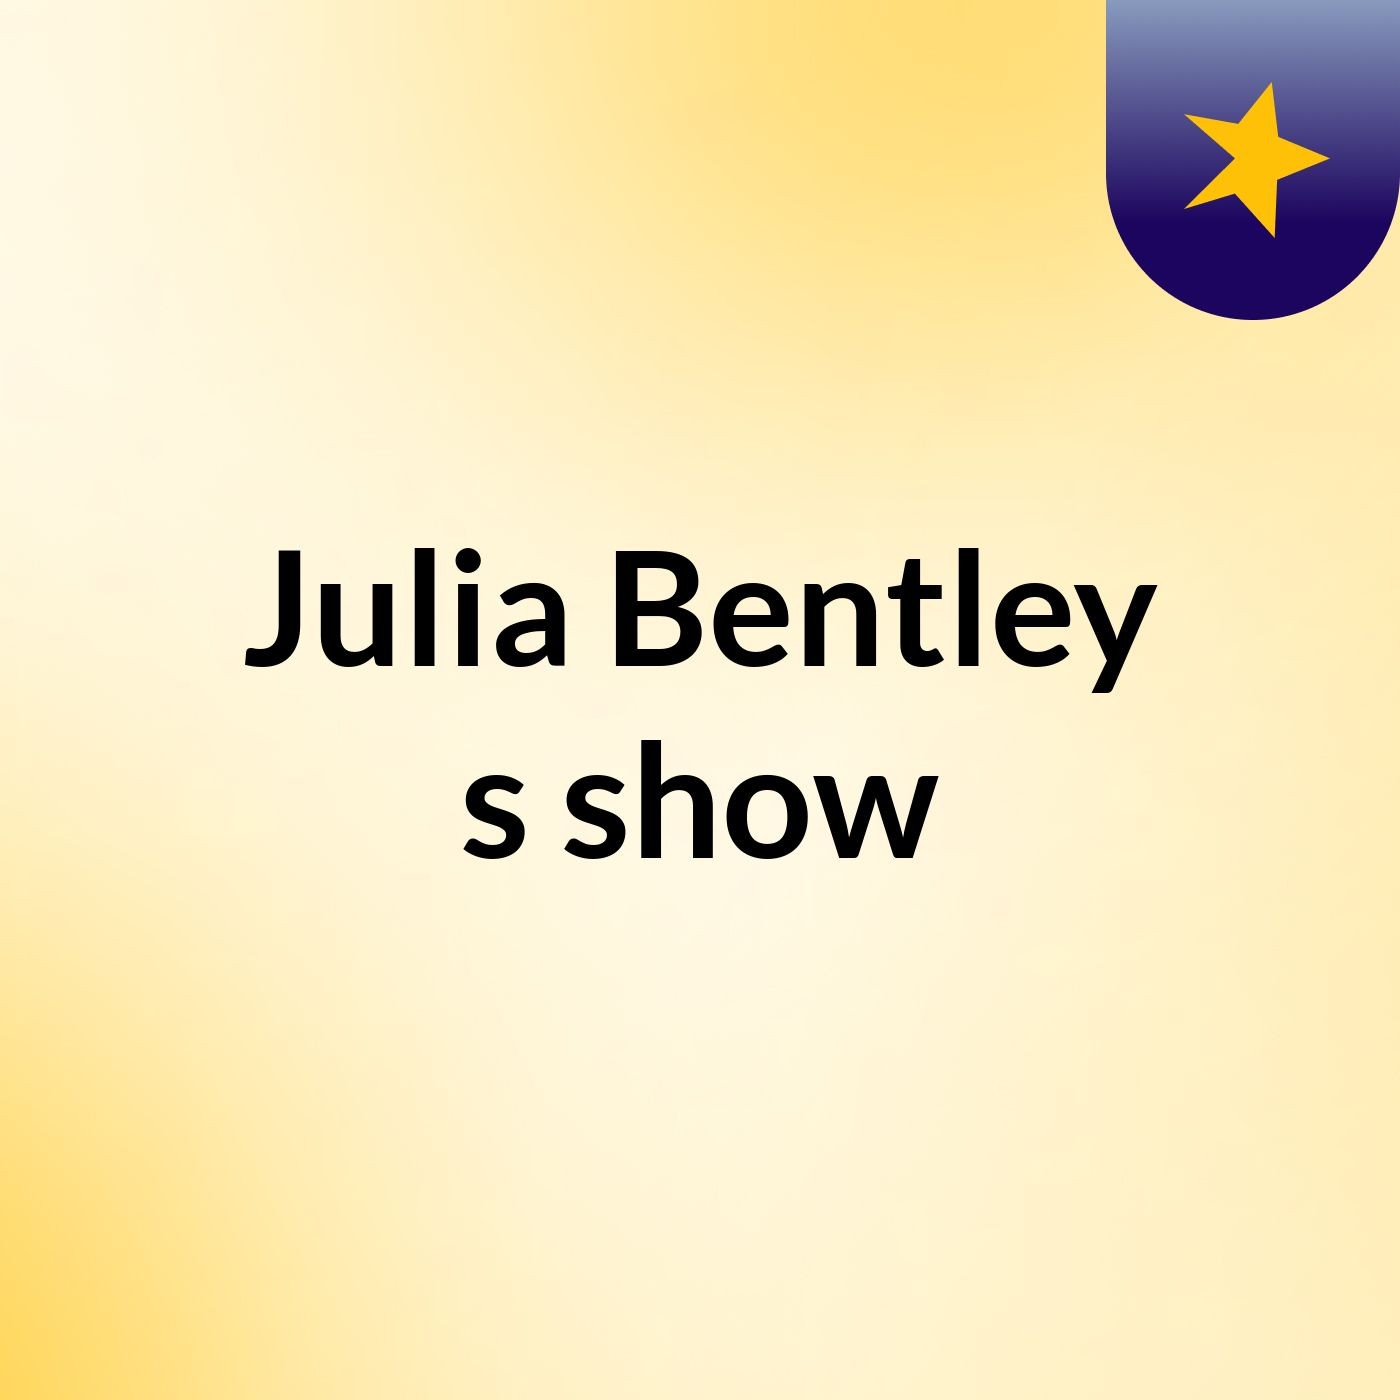 Julia Bentley's show